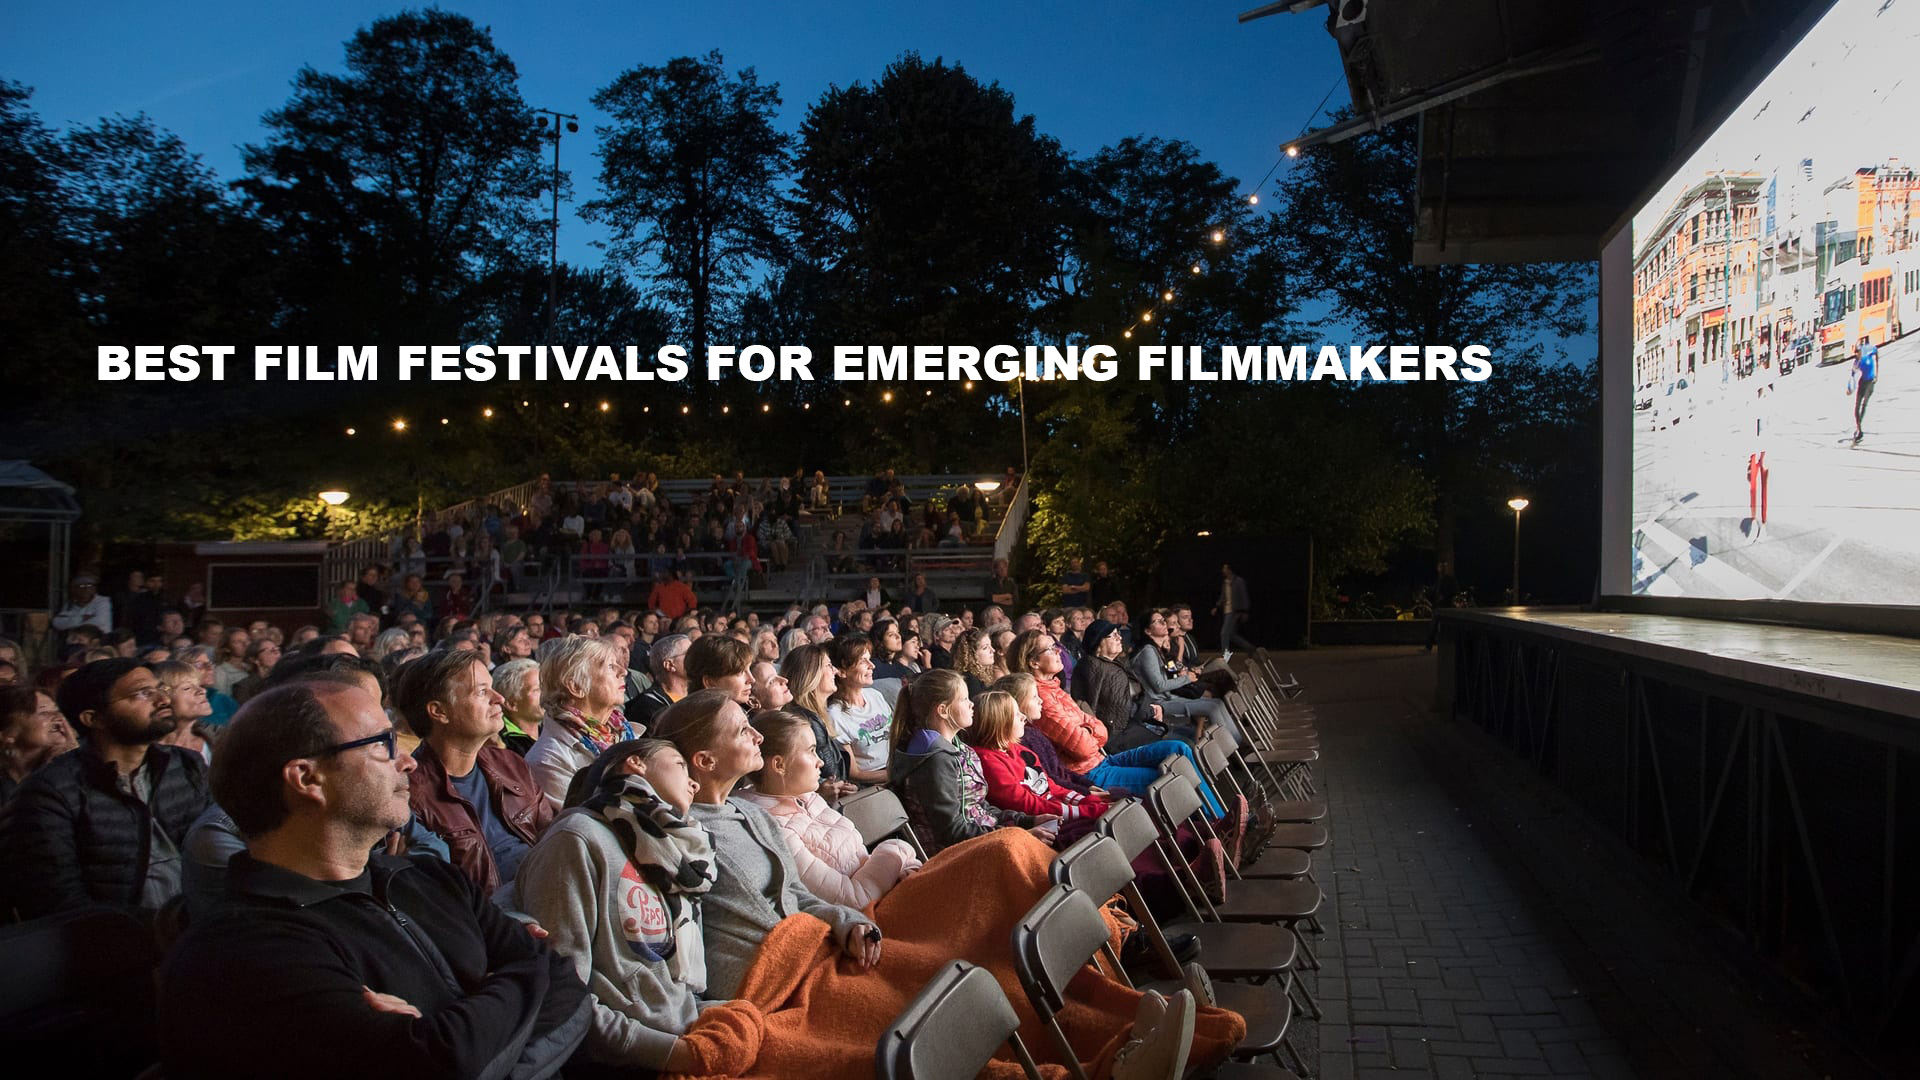 The Best Film Festivals for New Filmmakers